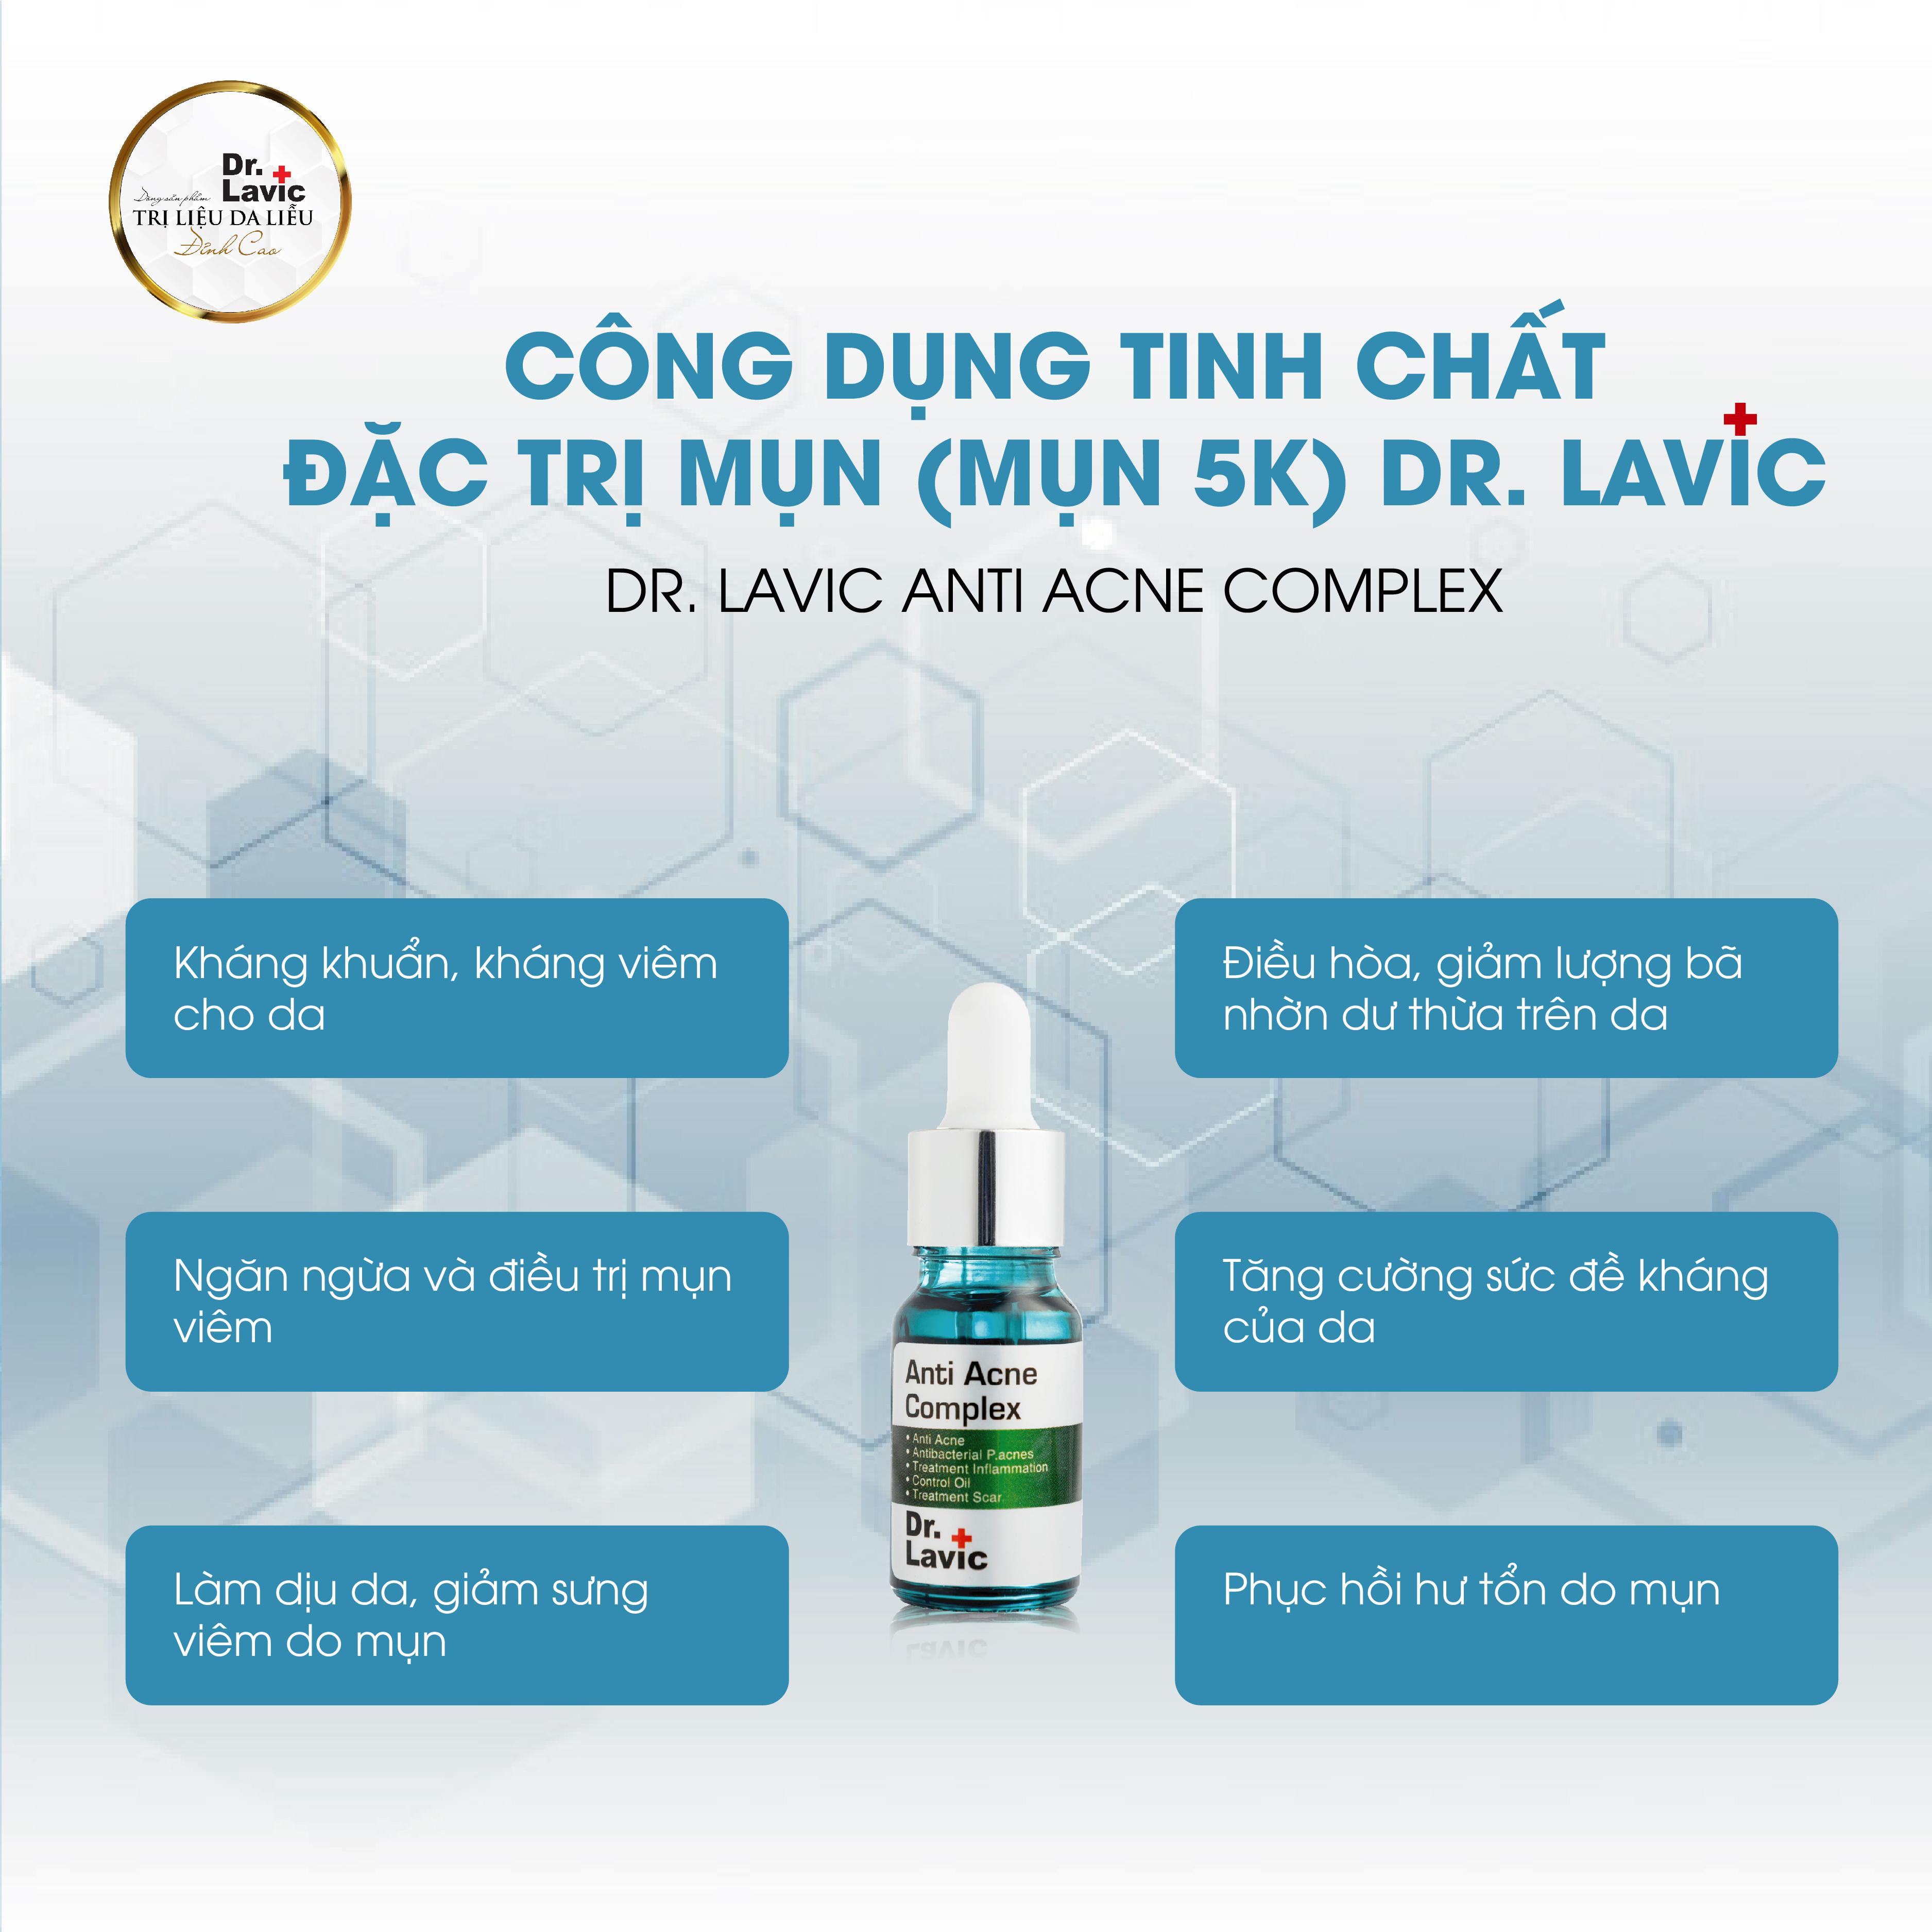 SERUM MỤN 5K DR.LAVIC - Dr.Lavic Anti acne complex